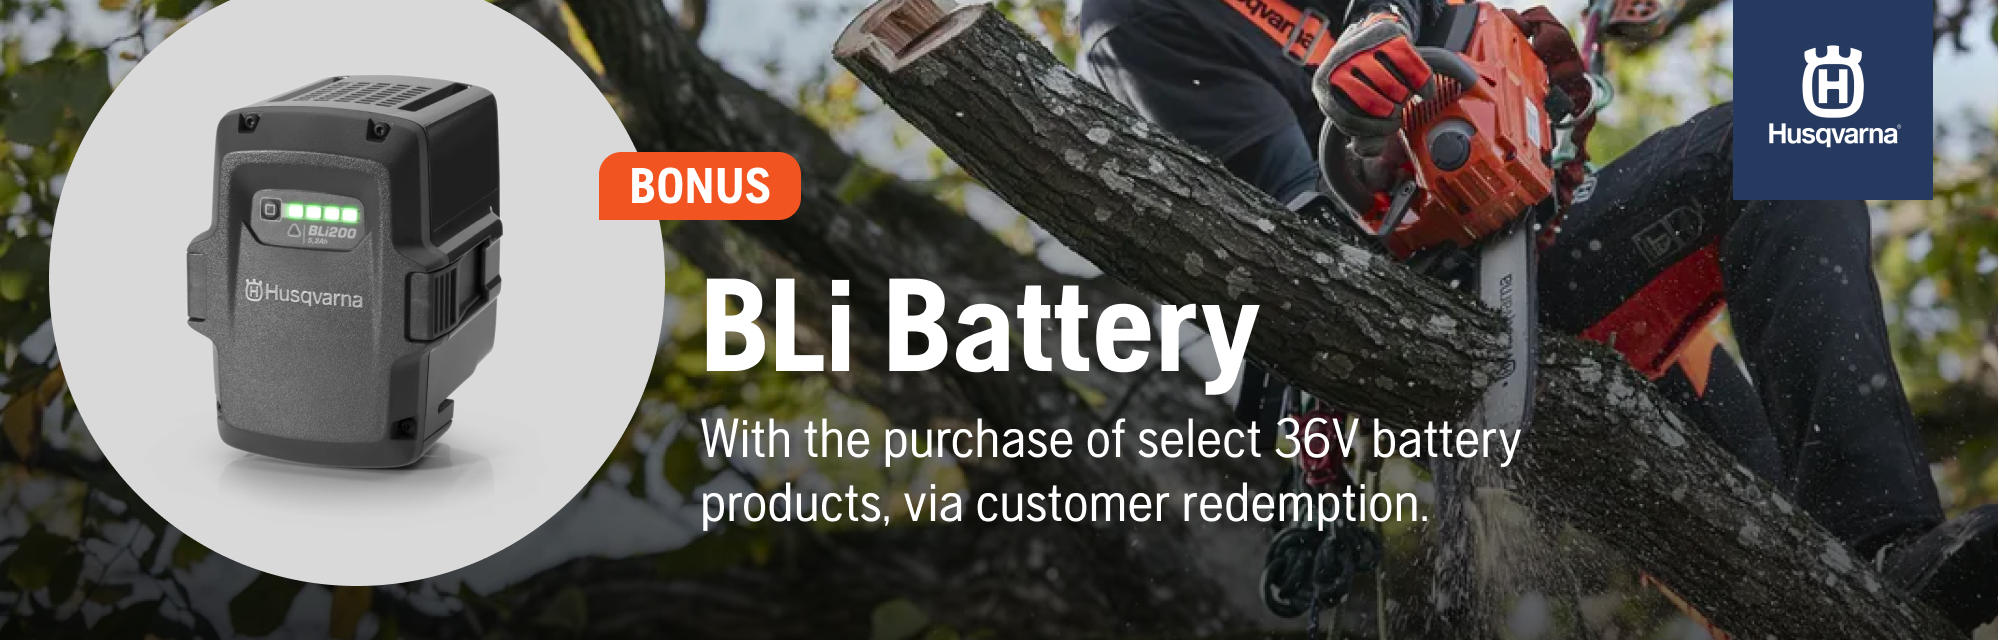 BLI Battery